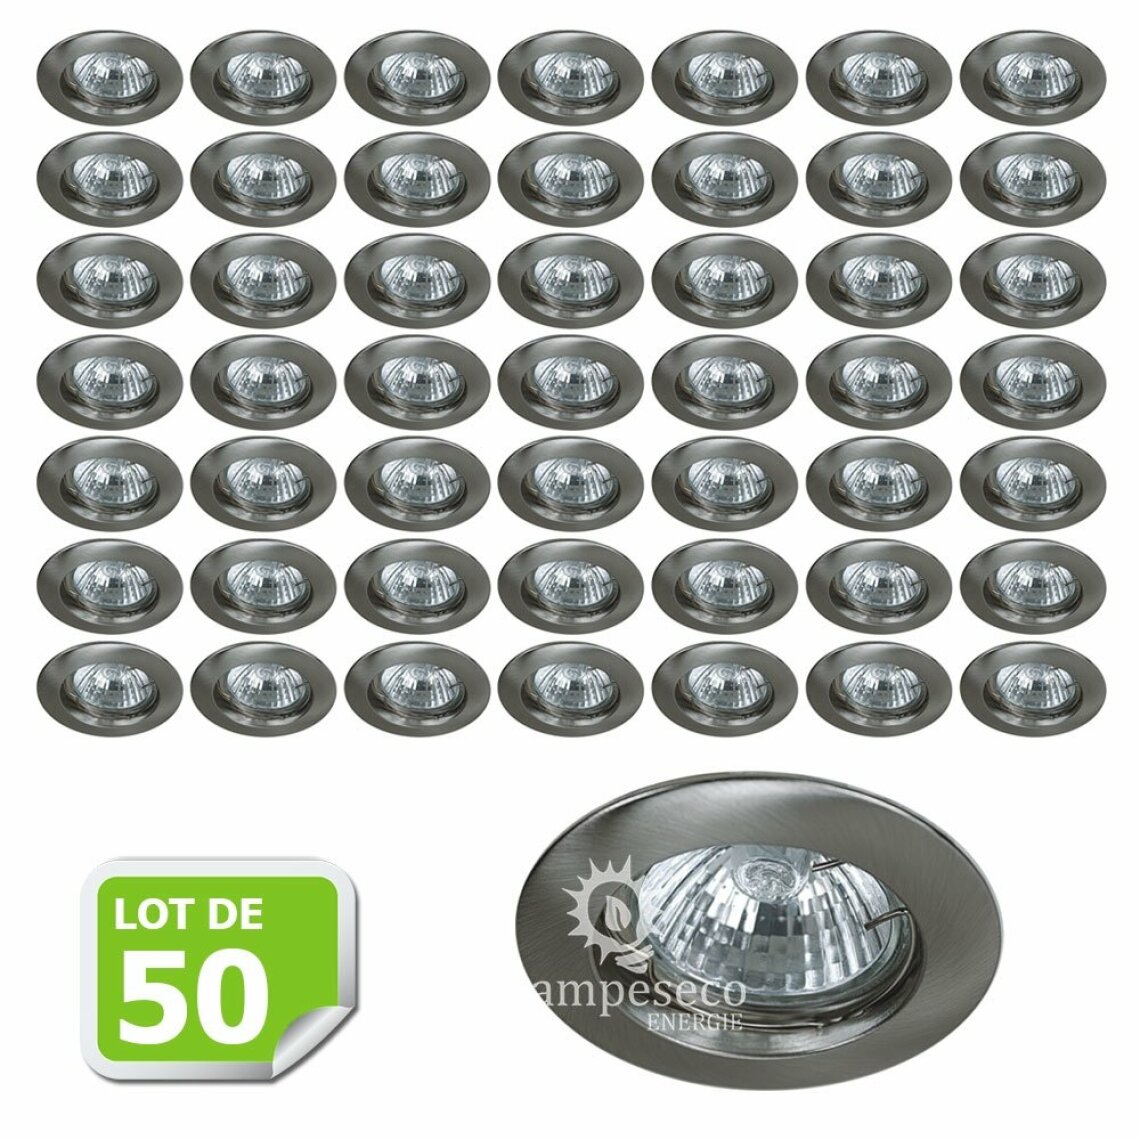 Lampesecoenergie - Lot de 50 Fixation de spot encastrable Classic Alu Brossé Diamètre 77mm ref. 949 - Boîtes d'encastrement